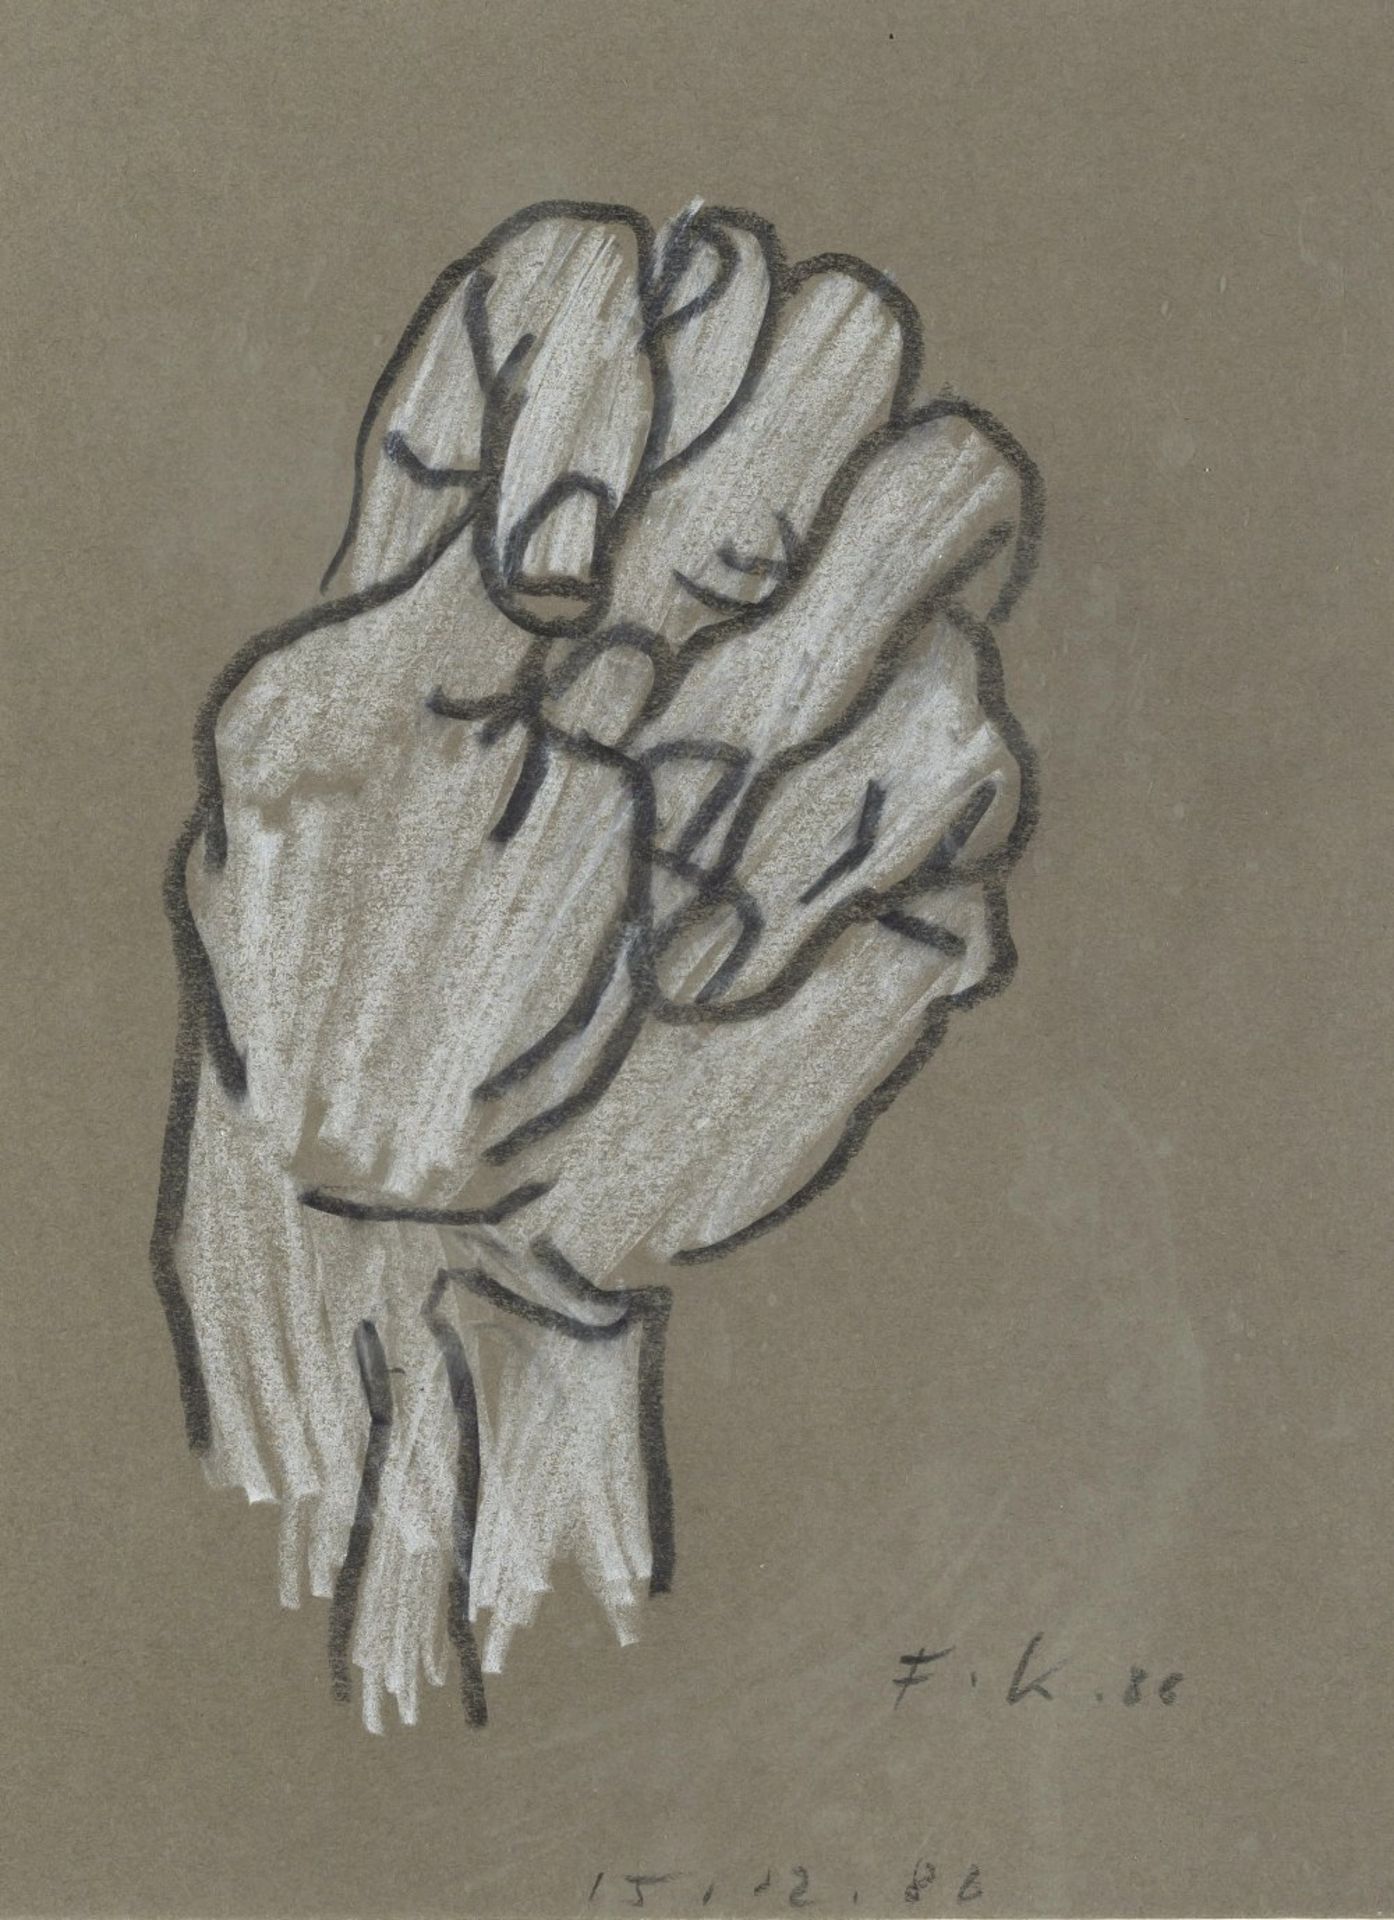 Koenig, Fritz"Hand". Bleistift/Farbstift. 23 x 17 cm. Monogr., dat. 86, bez.: 15.12.86.- - -27.